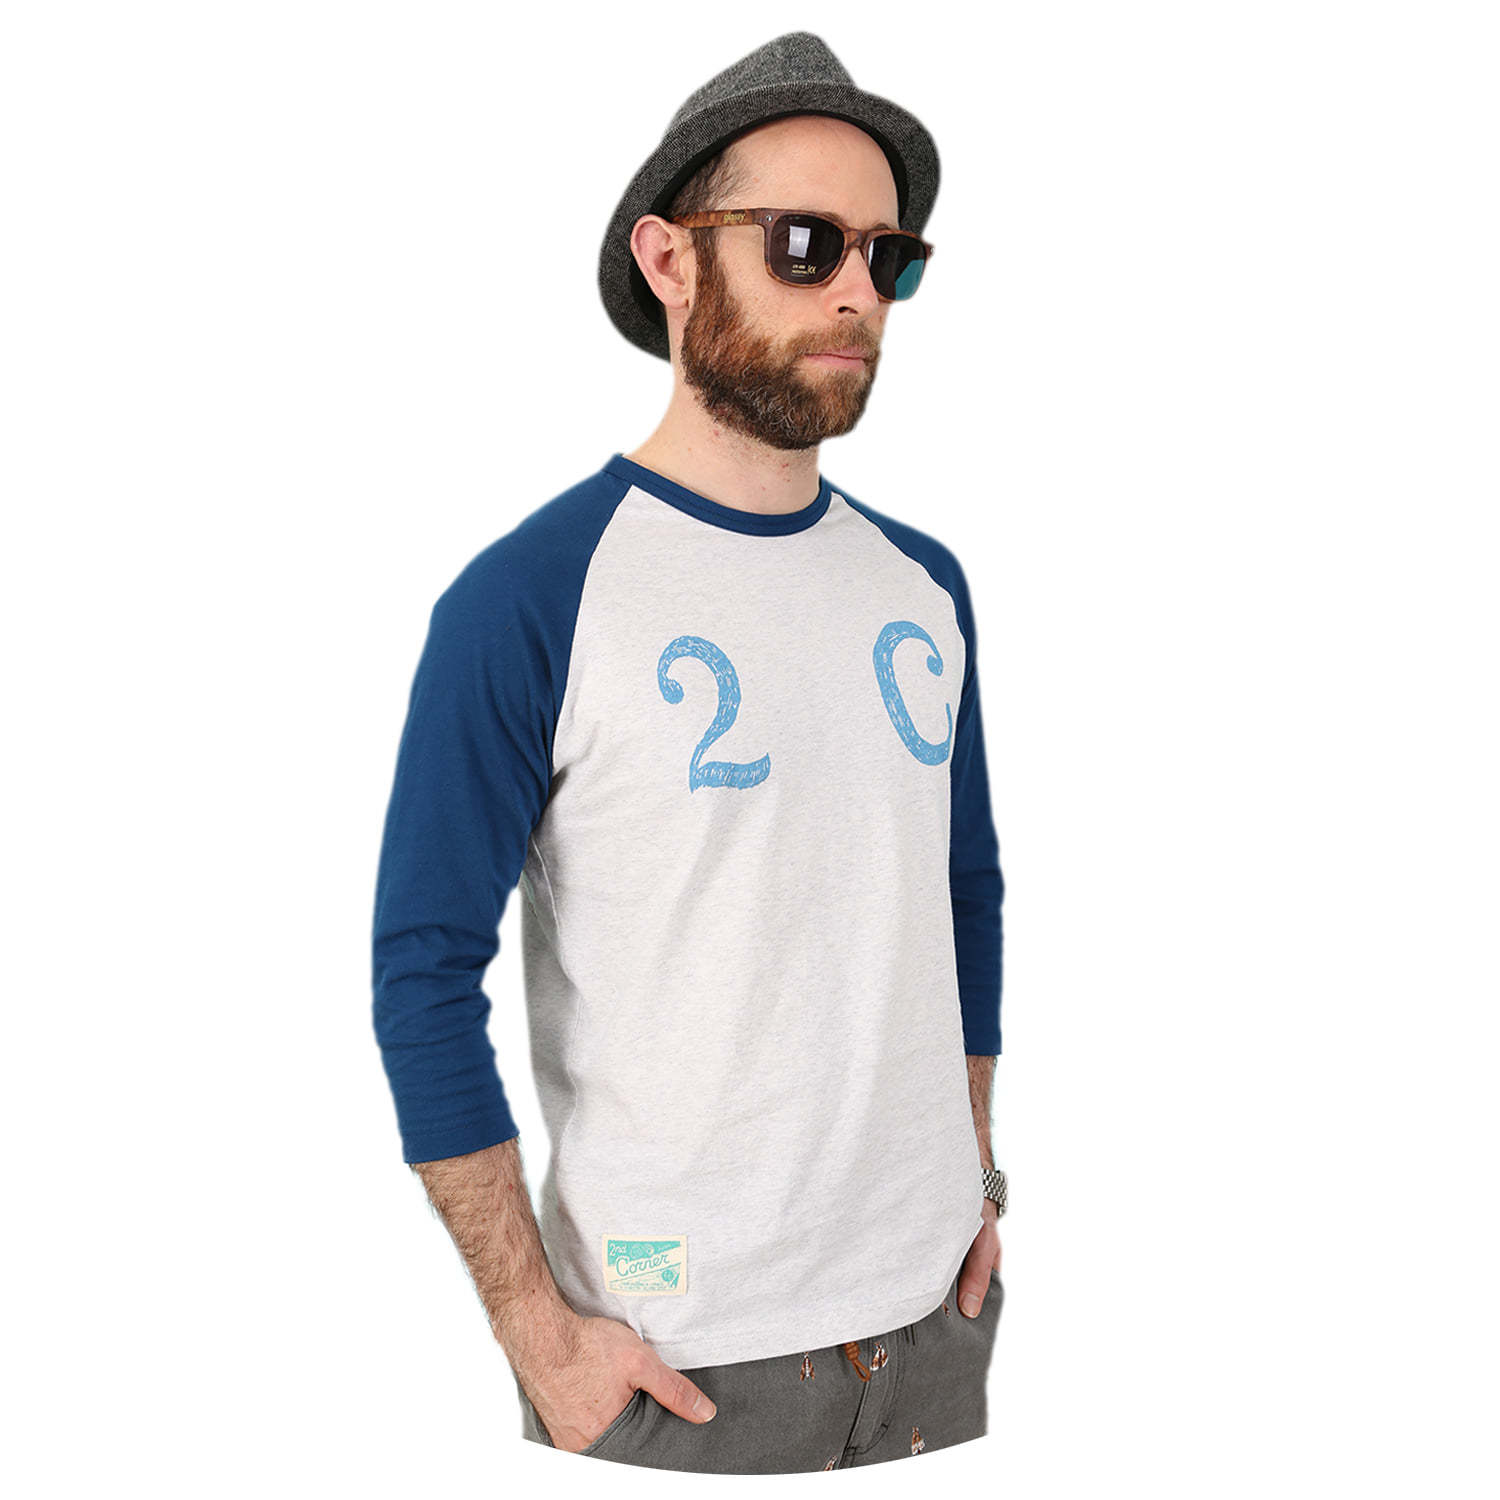 세컨드코너 2C 남성 7부 티셔츠 / 그래픽 티셔츠 / 봄-여름-가을 / 라운드넥 카프리 티셔츠 Princeton - White